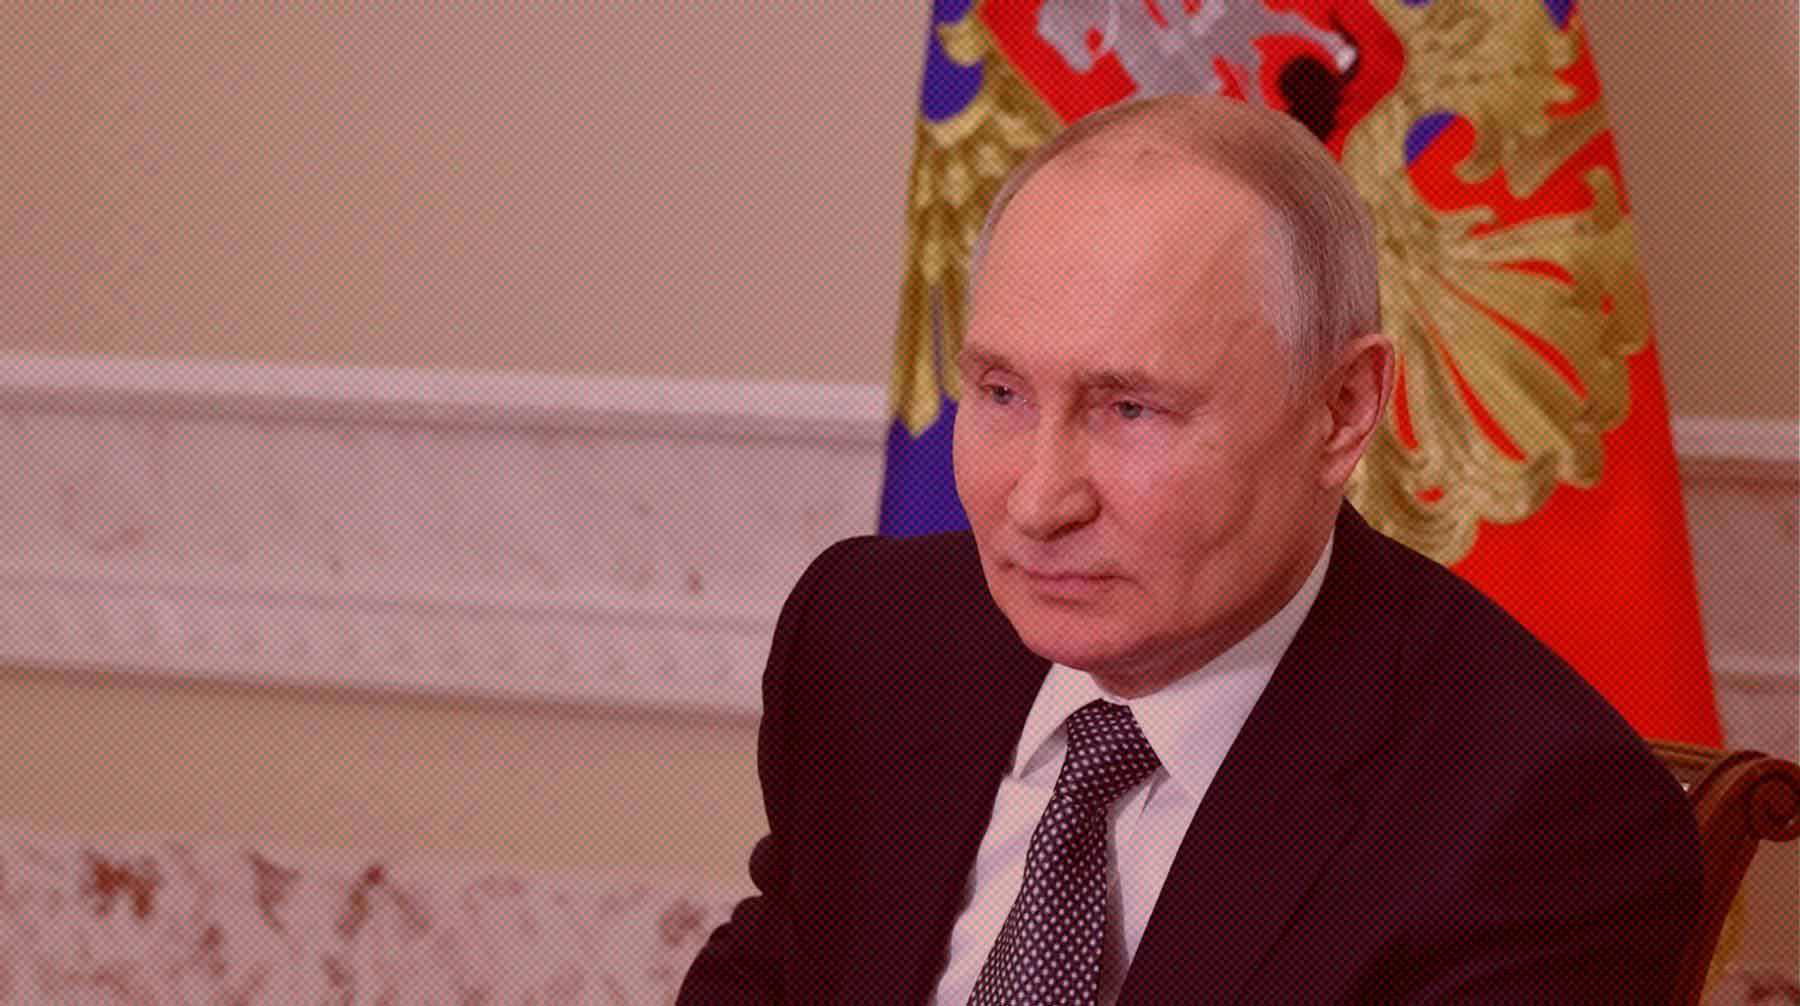 Dailystorm - Путин: Вооруженный мятеж в любом случае был бы подавлен